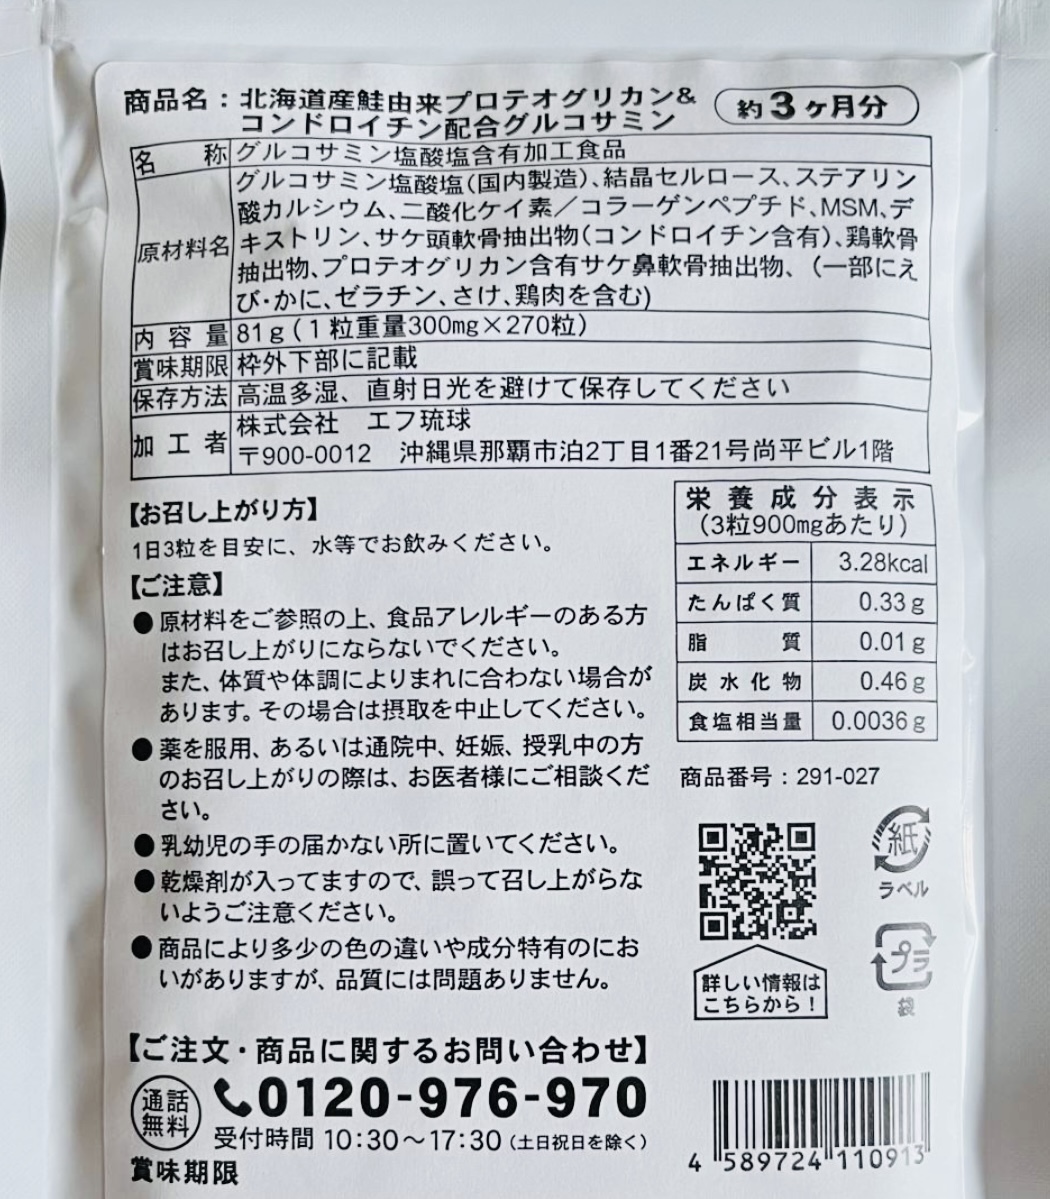 【送料無料】グルコサミン 北海道産鮭由来 プロテオグリカン&コンドロイチン配合 約3ヶ月分(270粒入×1袋) サプリメント シードコムス_画像2